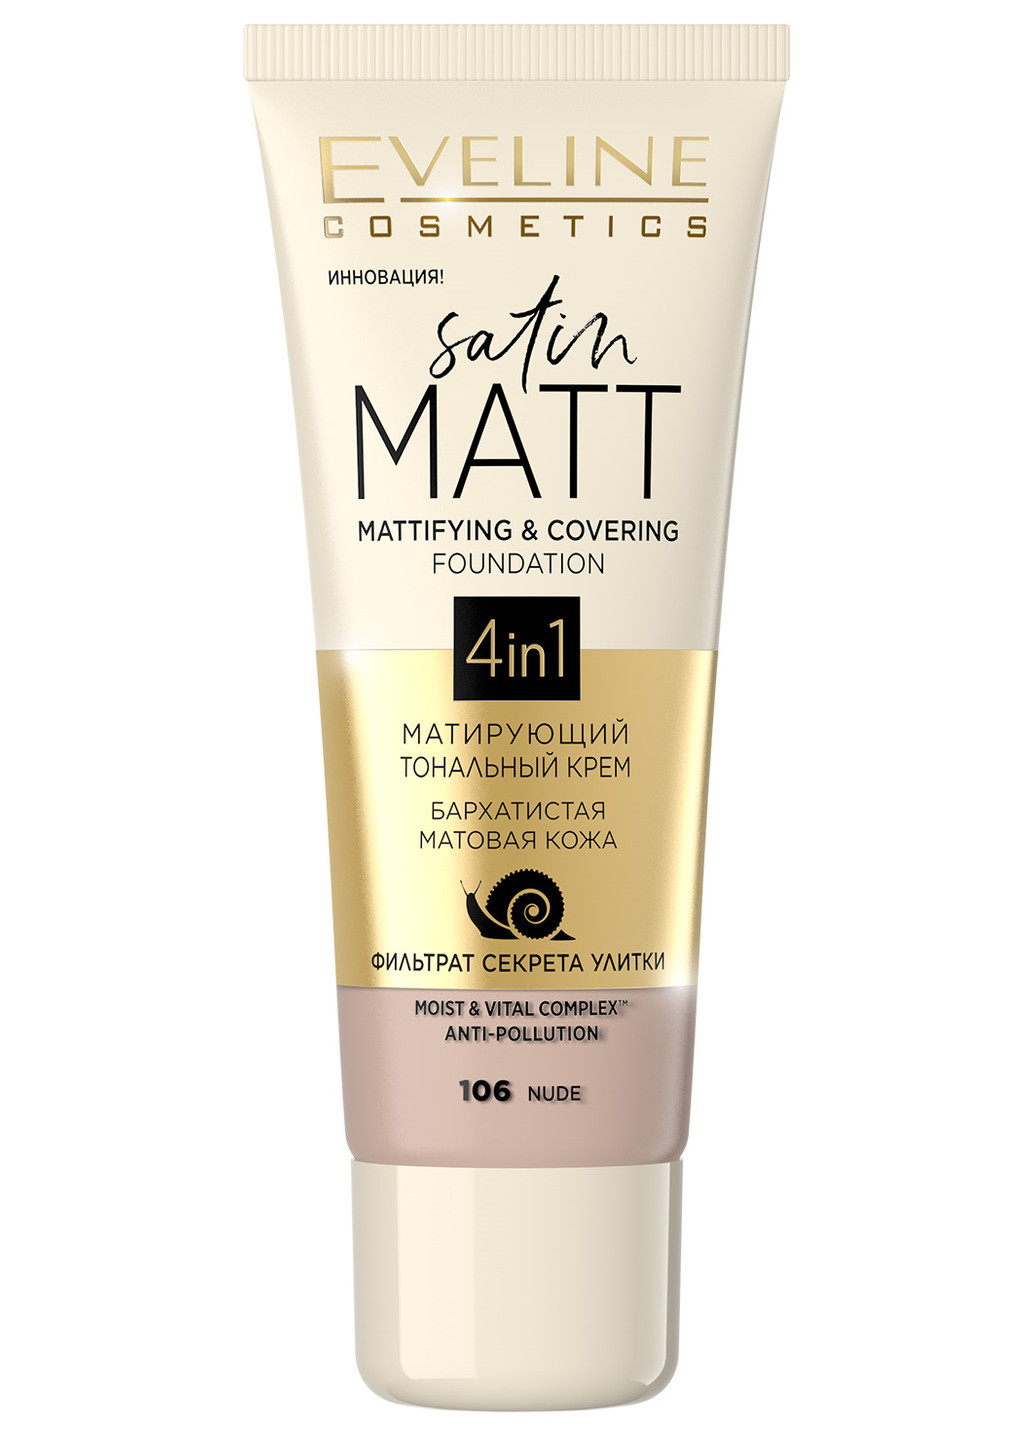 Матирующий тональный крем для лица Satin Matt Mattifying & Covering Foundation 4in1 №106 Nude Eveline Cosmetics (190885903)